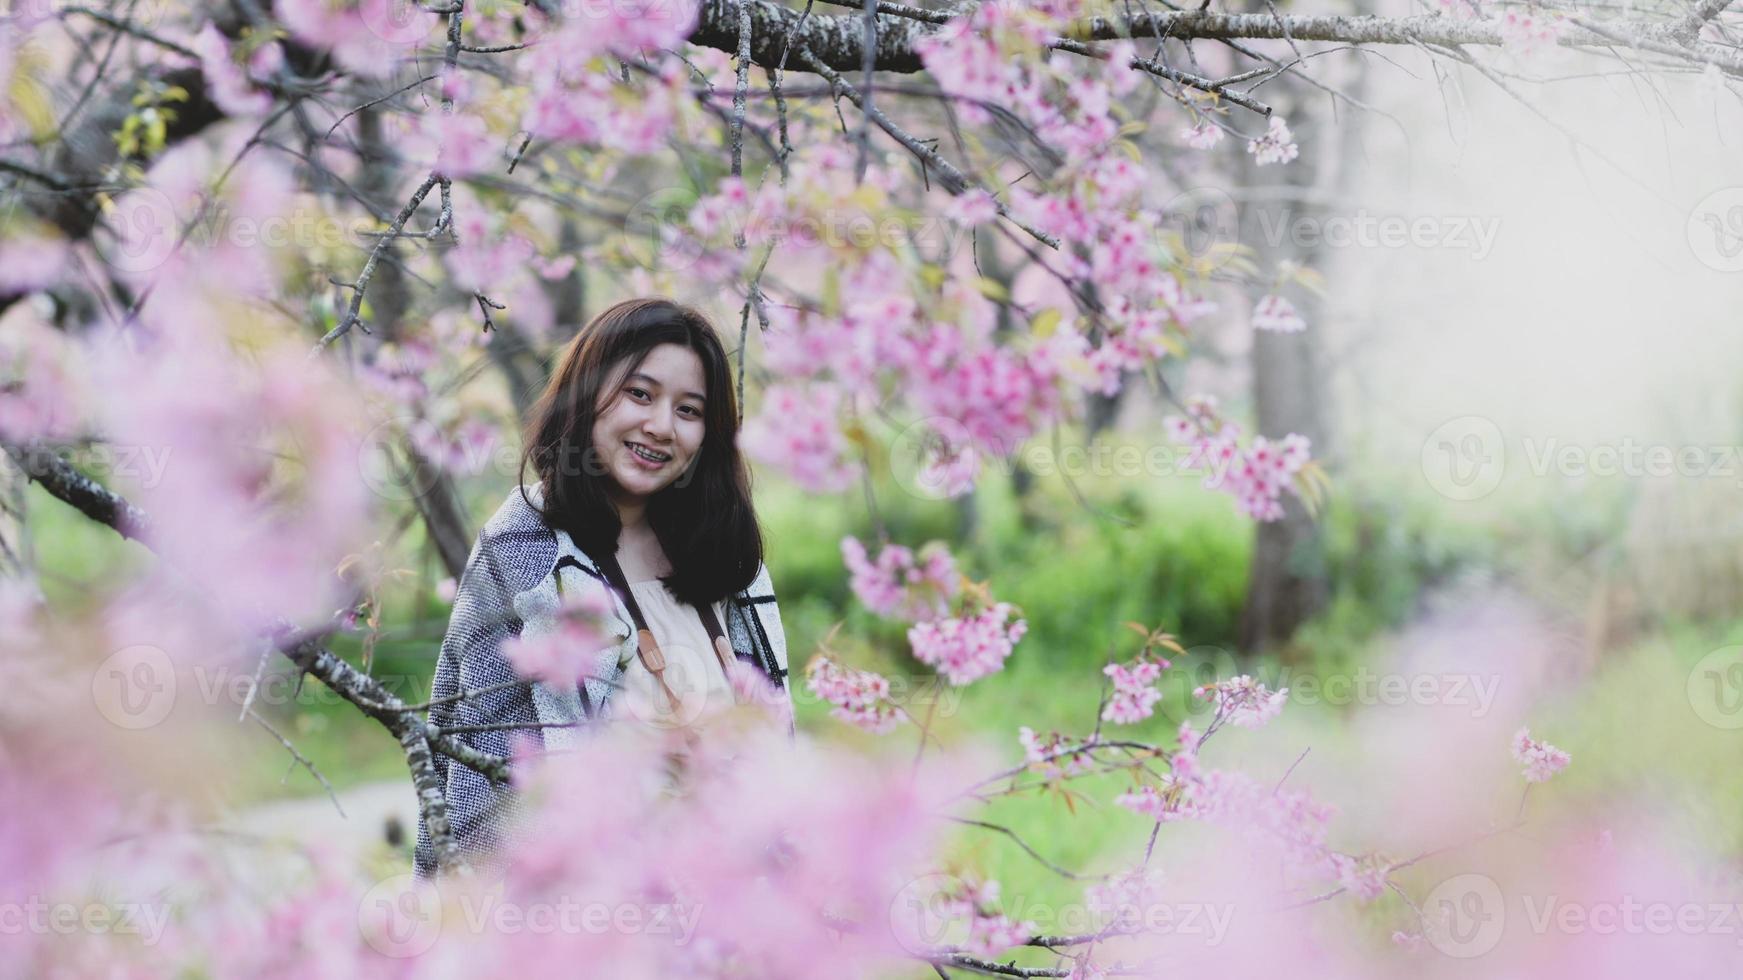 Une adolescente asiatique voyage joyeusement en prenant des photos avec des fleurs de cerisier.